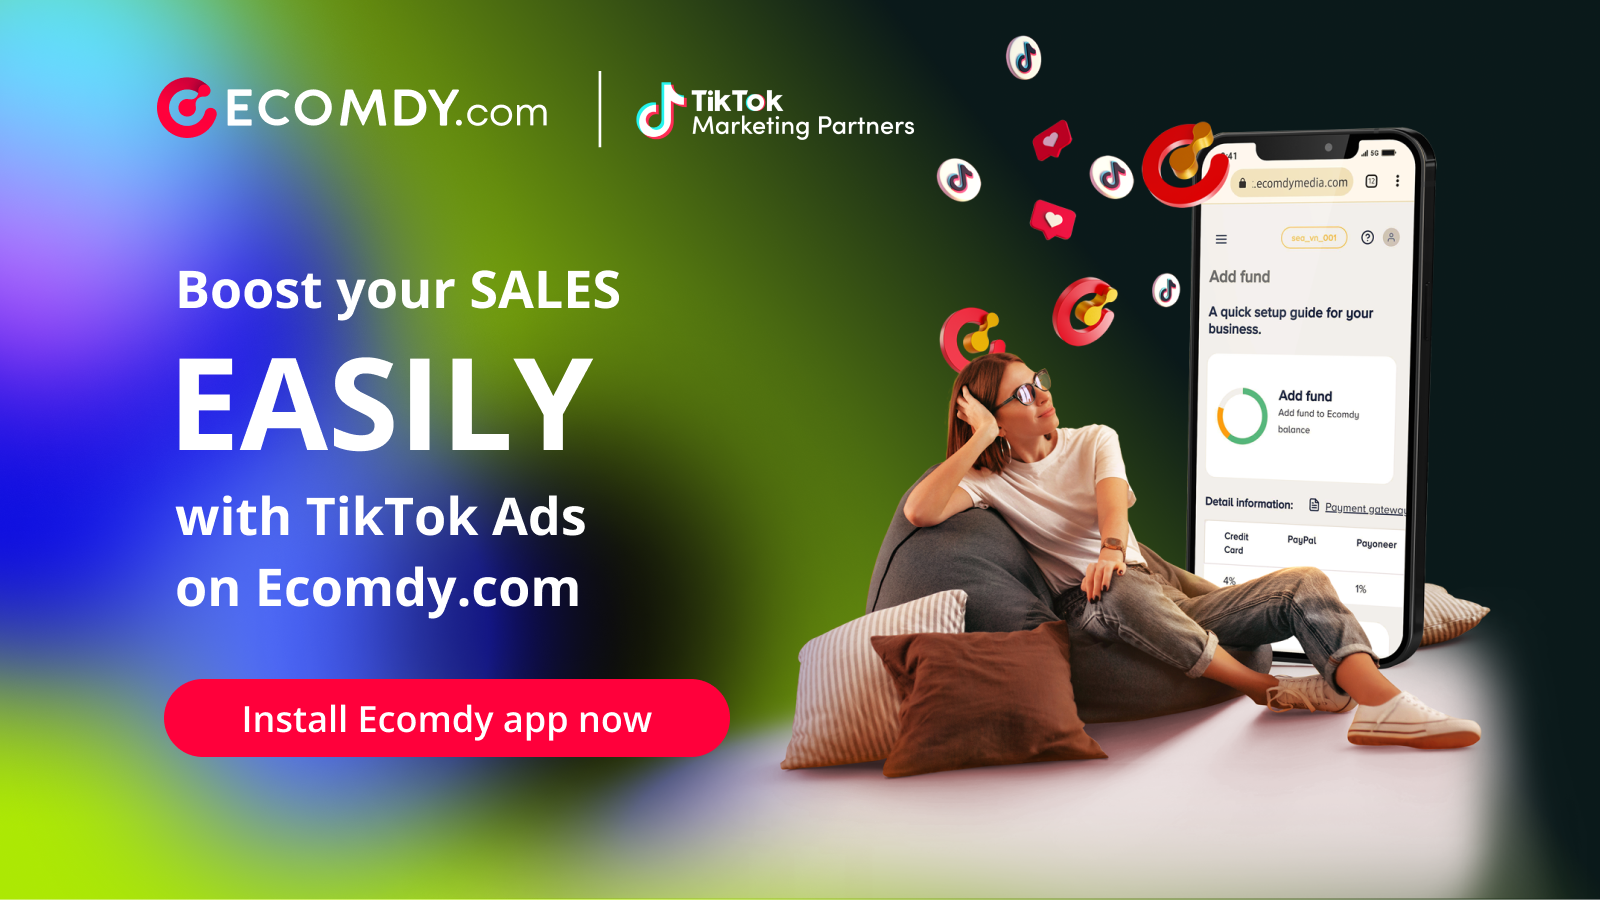 Verhoog de verkoop eenvoudig met TikTok-advertenties op Ecomdy.com